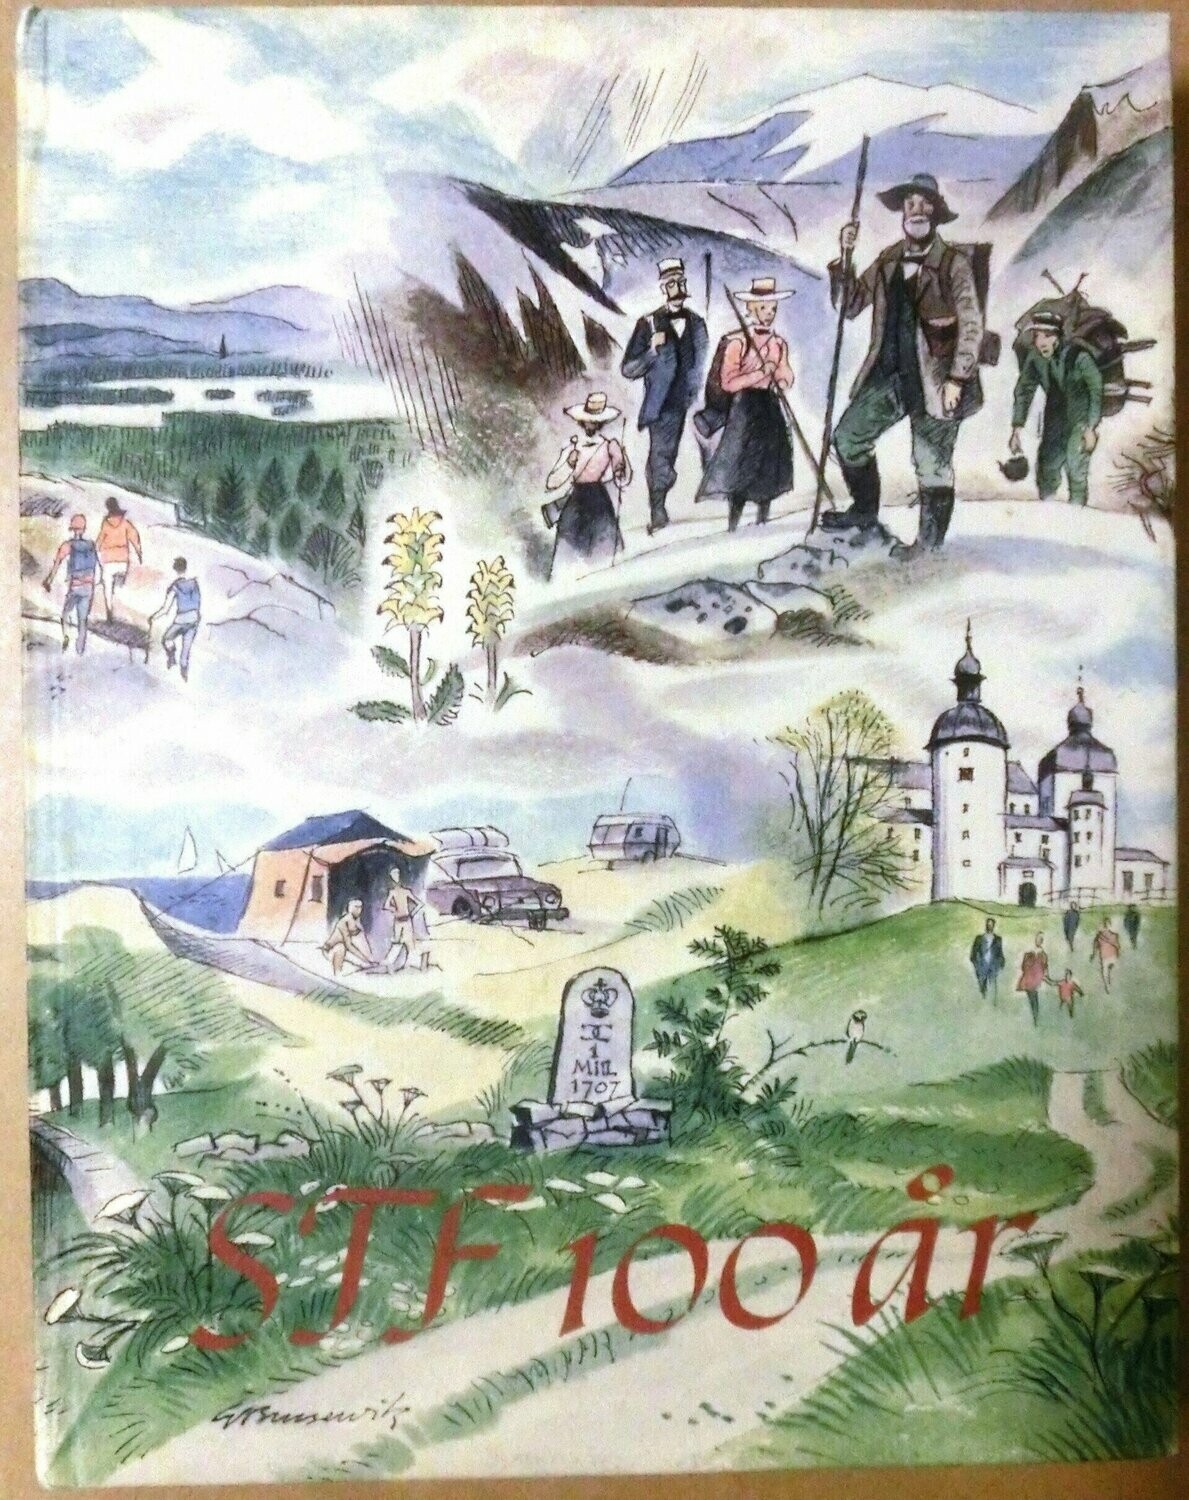 STF årsskrift 1986 - 100 år